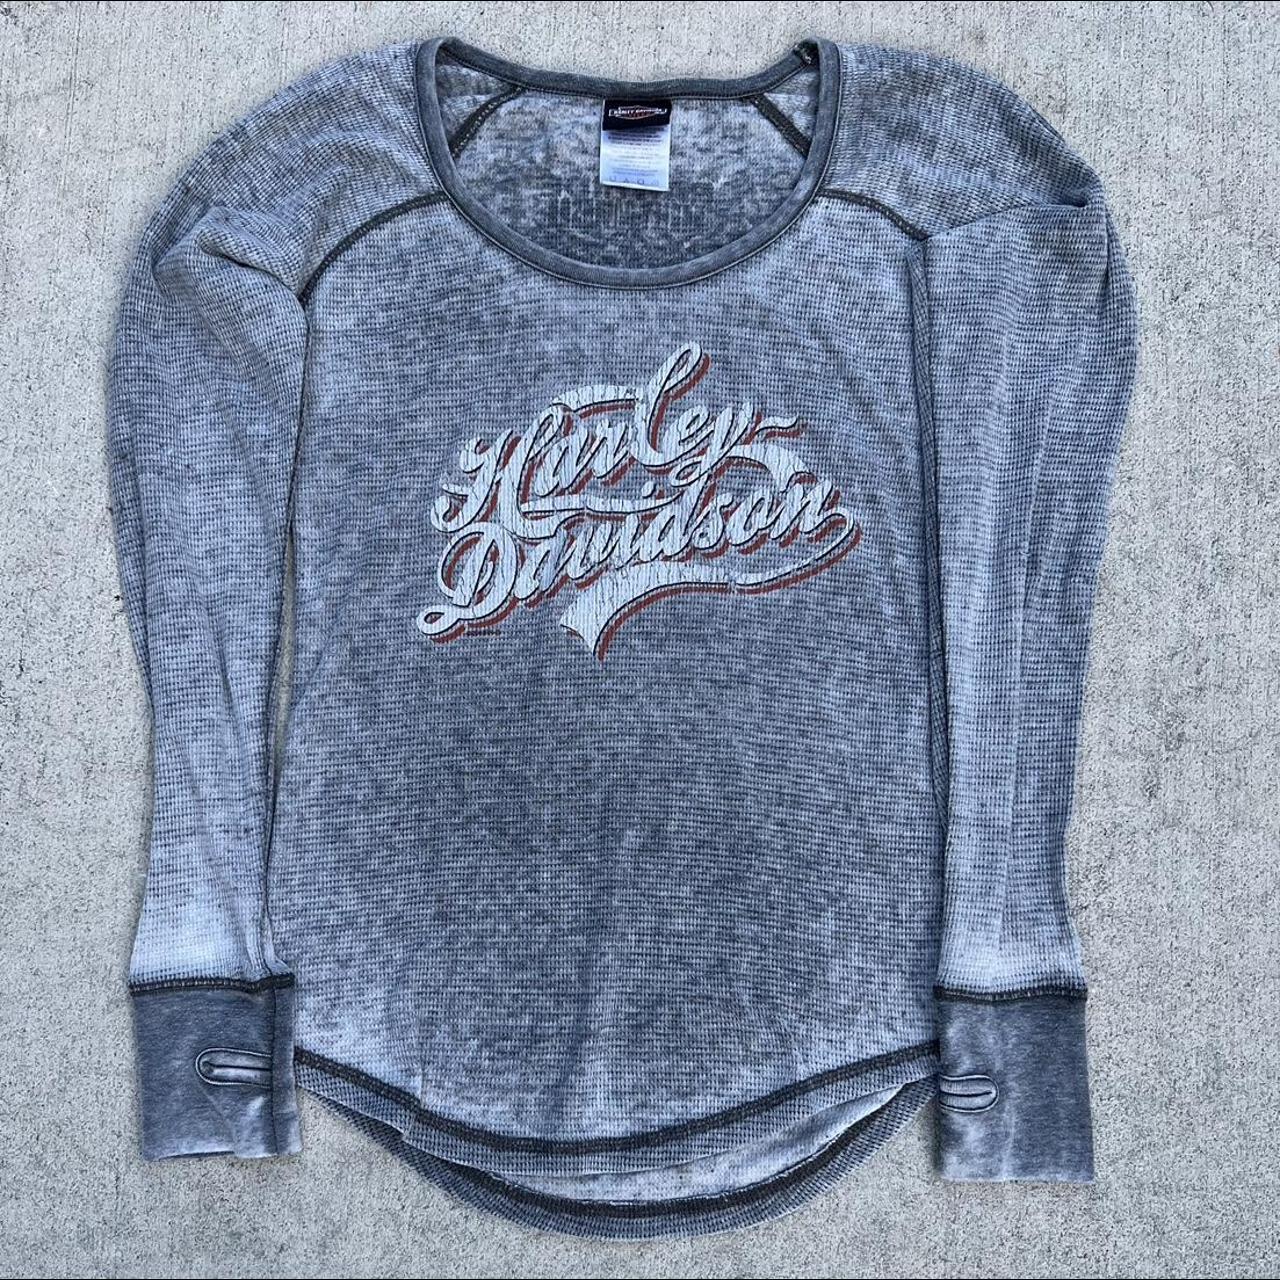 Women's Harley Davidson Thermal shirt size Large - Depop